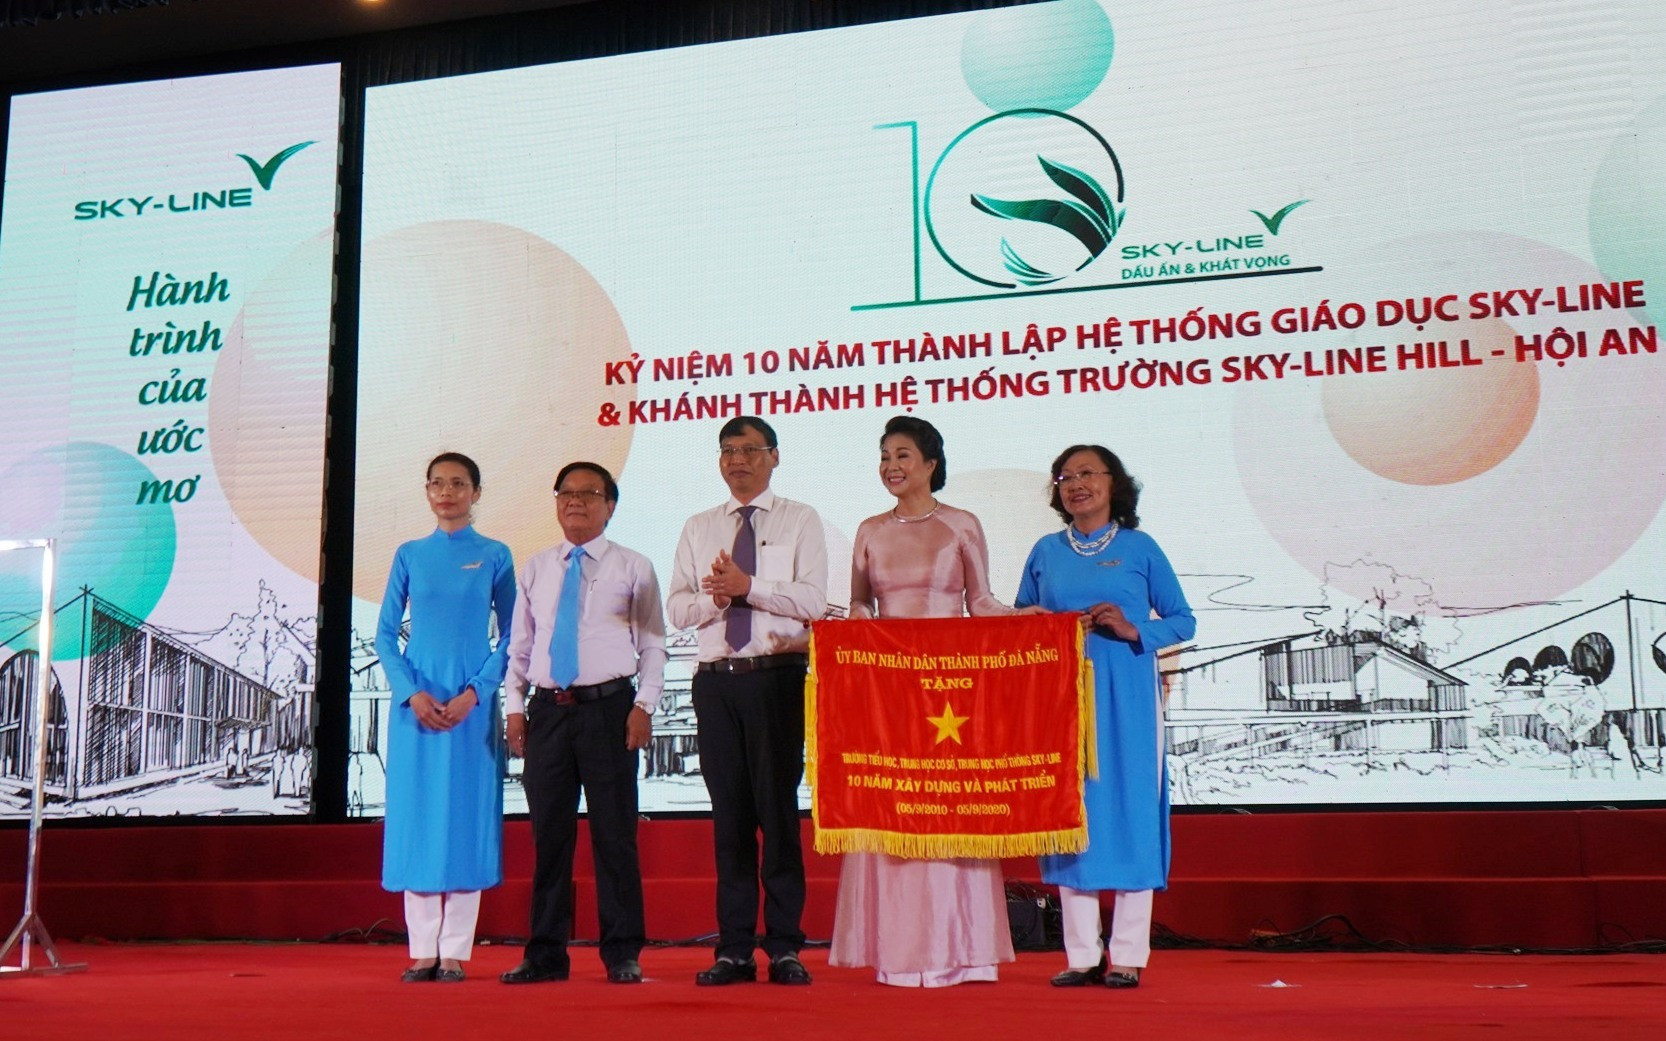 Hệ thông giáo dục Sky Line vinh dự nhận Cờ truyền thống 10 năm xây dựng và phát triển (2010 -2020) do Lãnh đạo TP Đà Nẵng trao tặng. Ảnh NTB